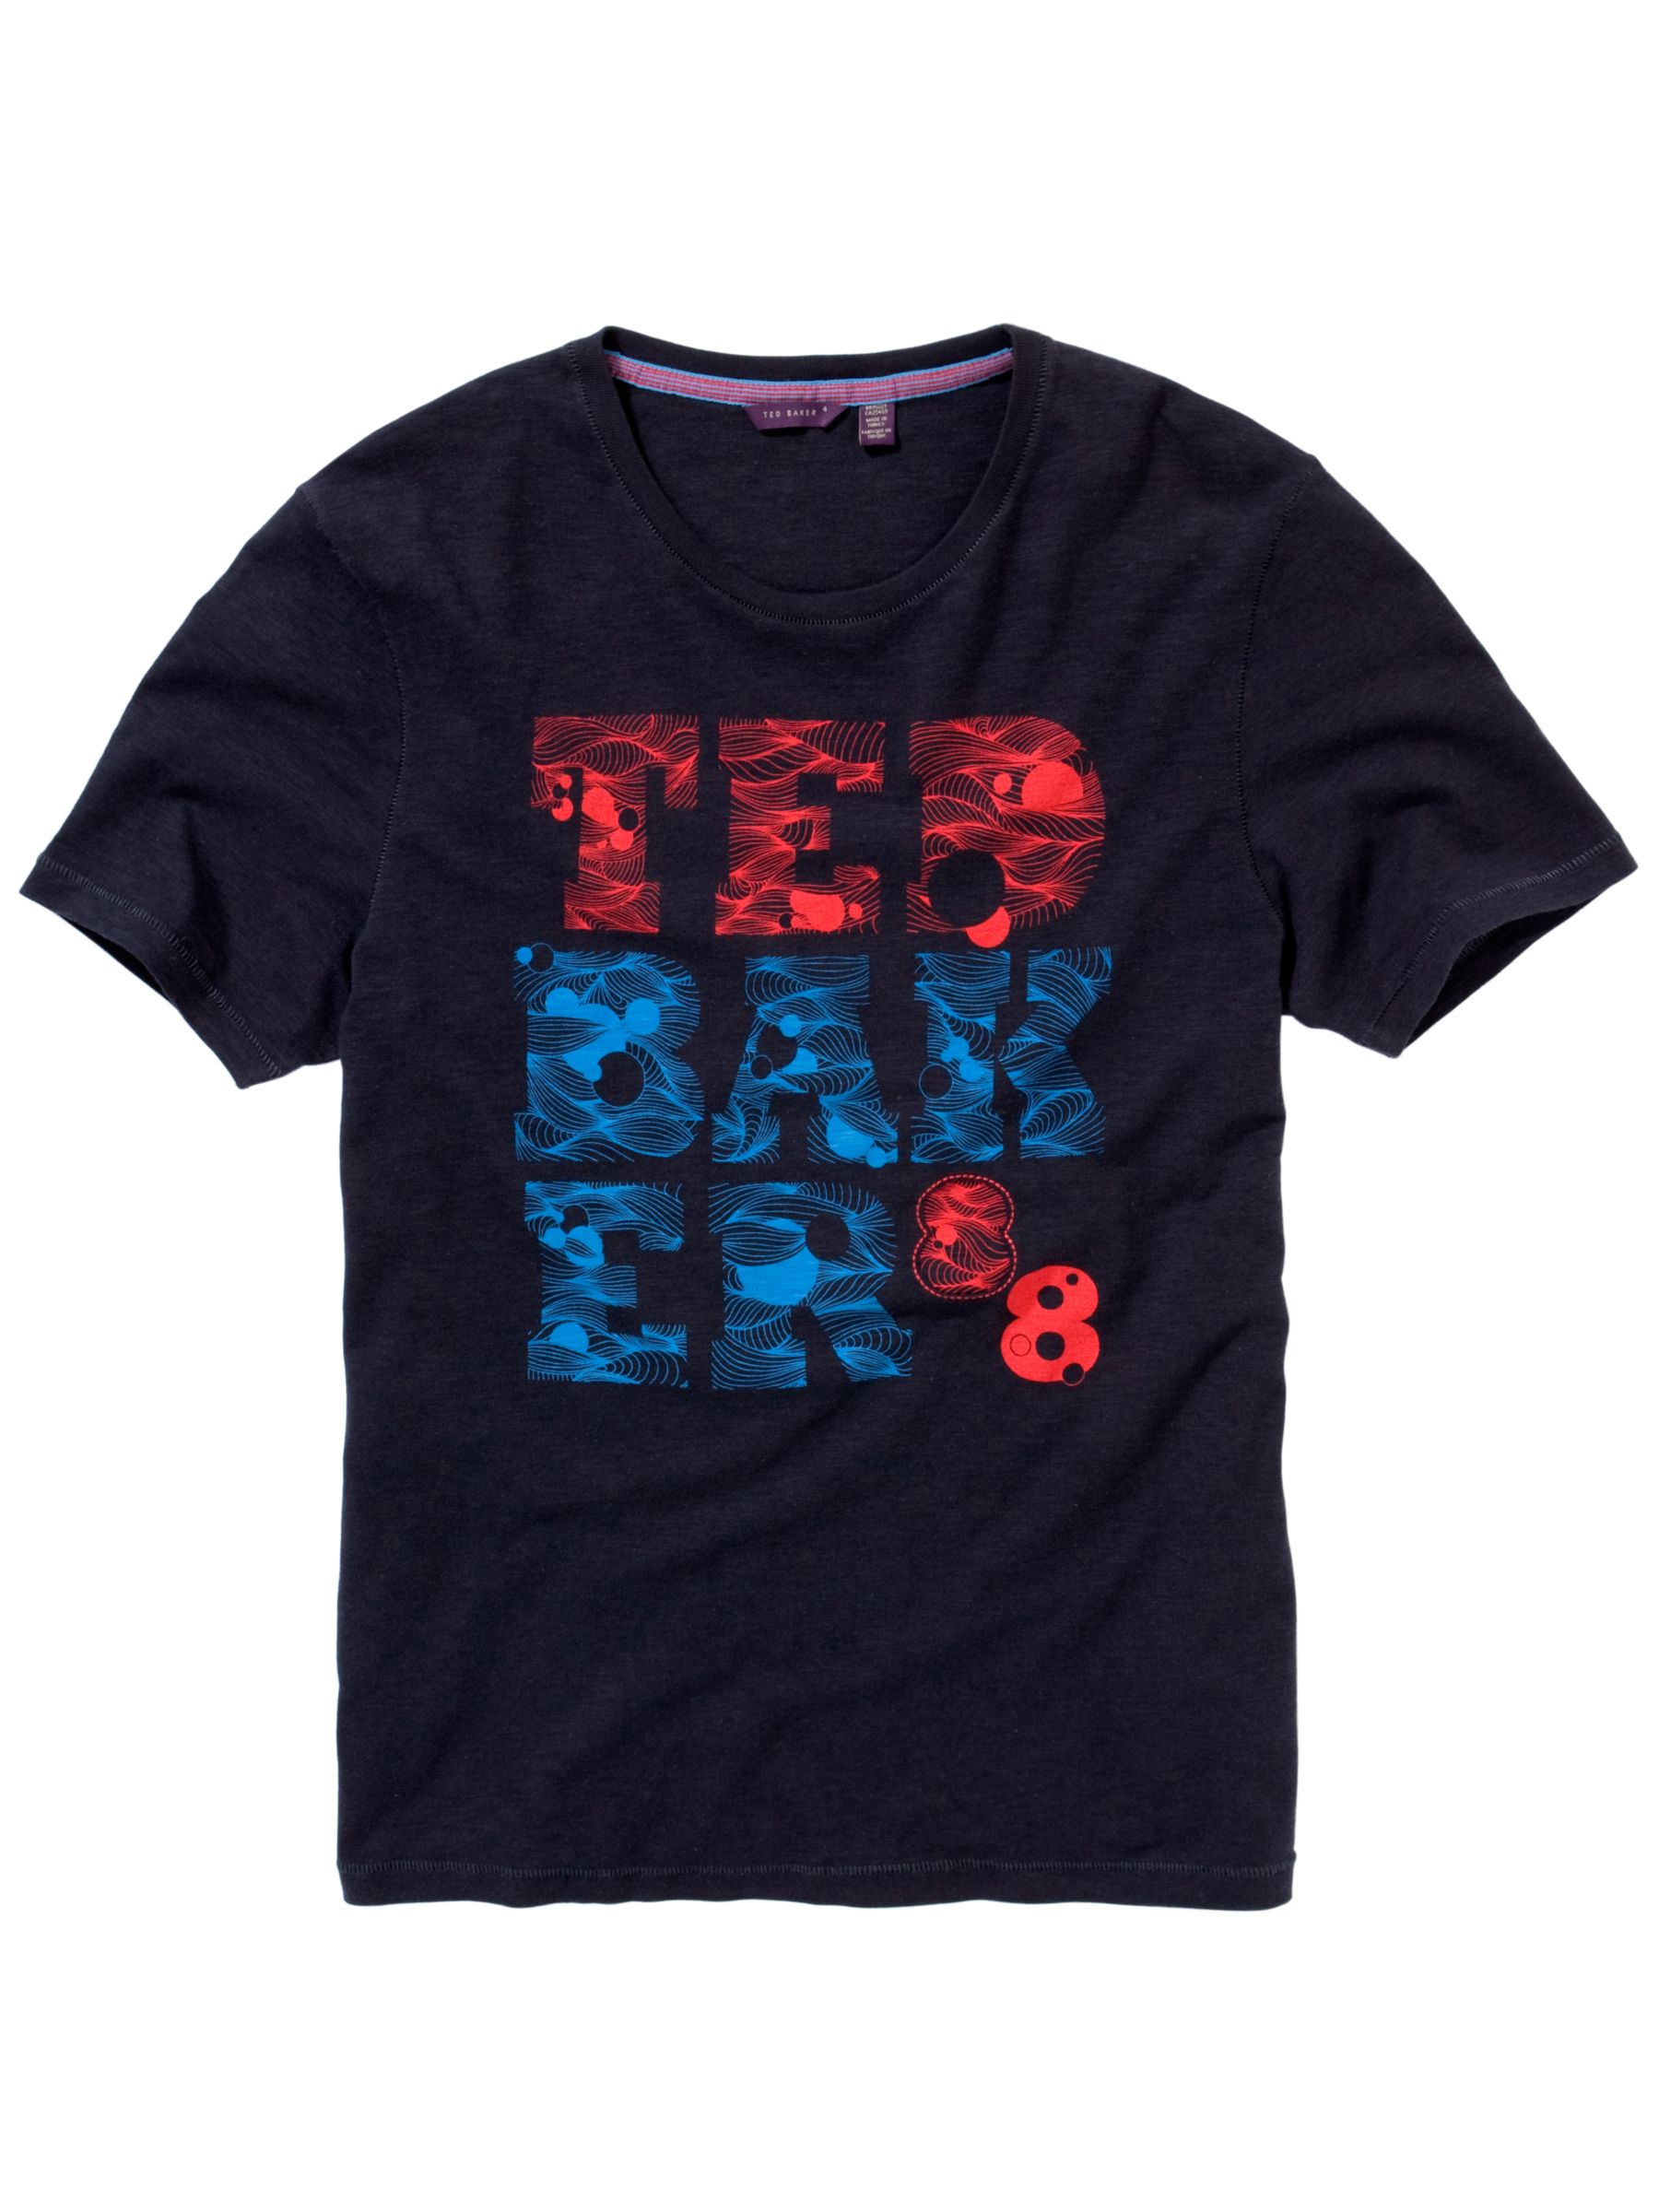 Ted Baker Swirl Brand T-Shirt, Navy , M